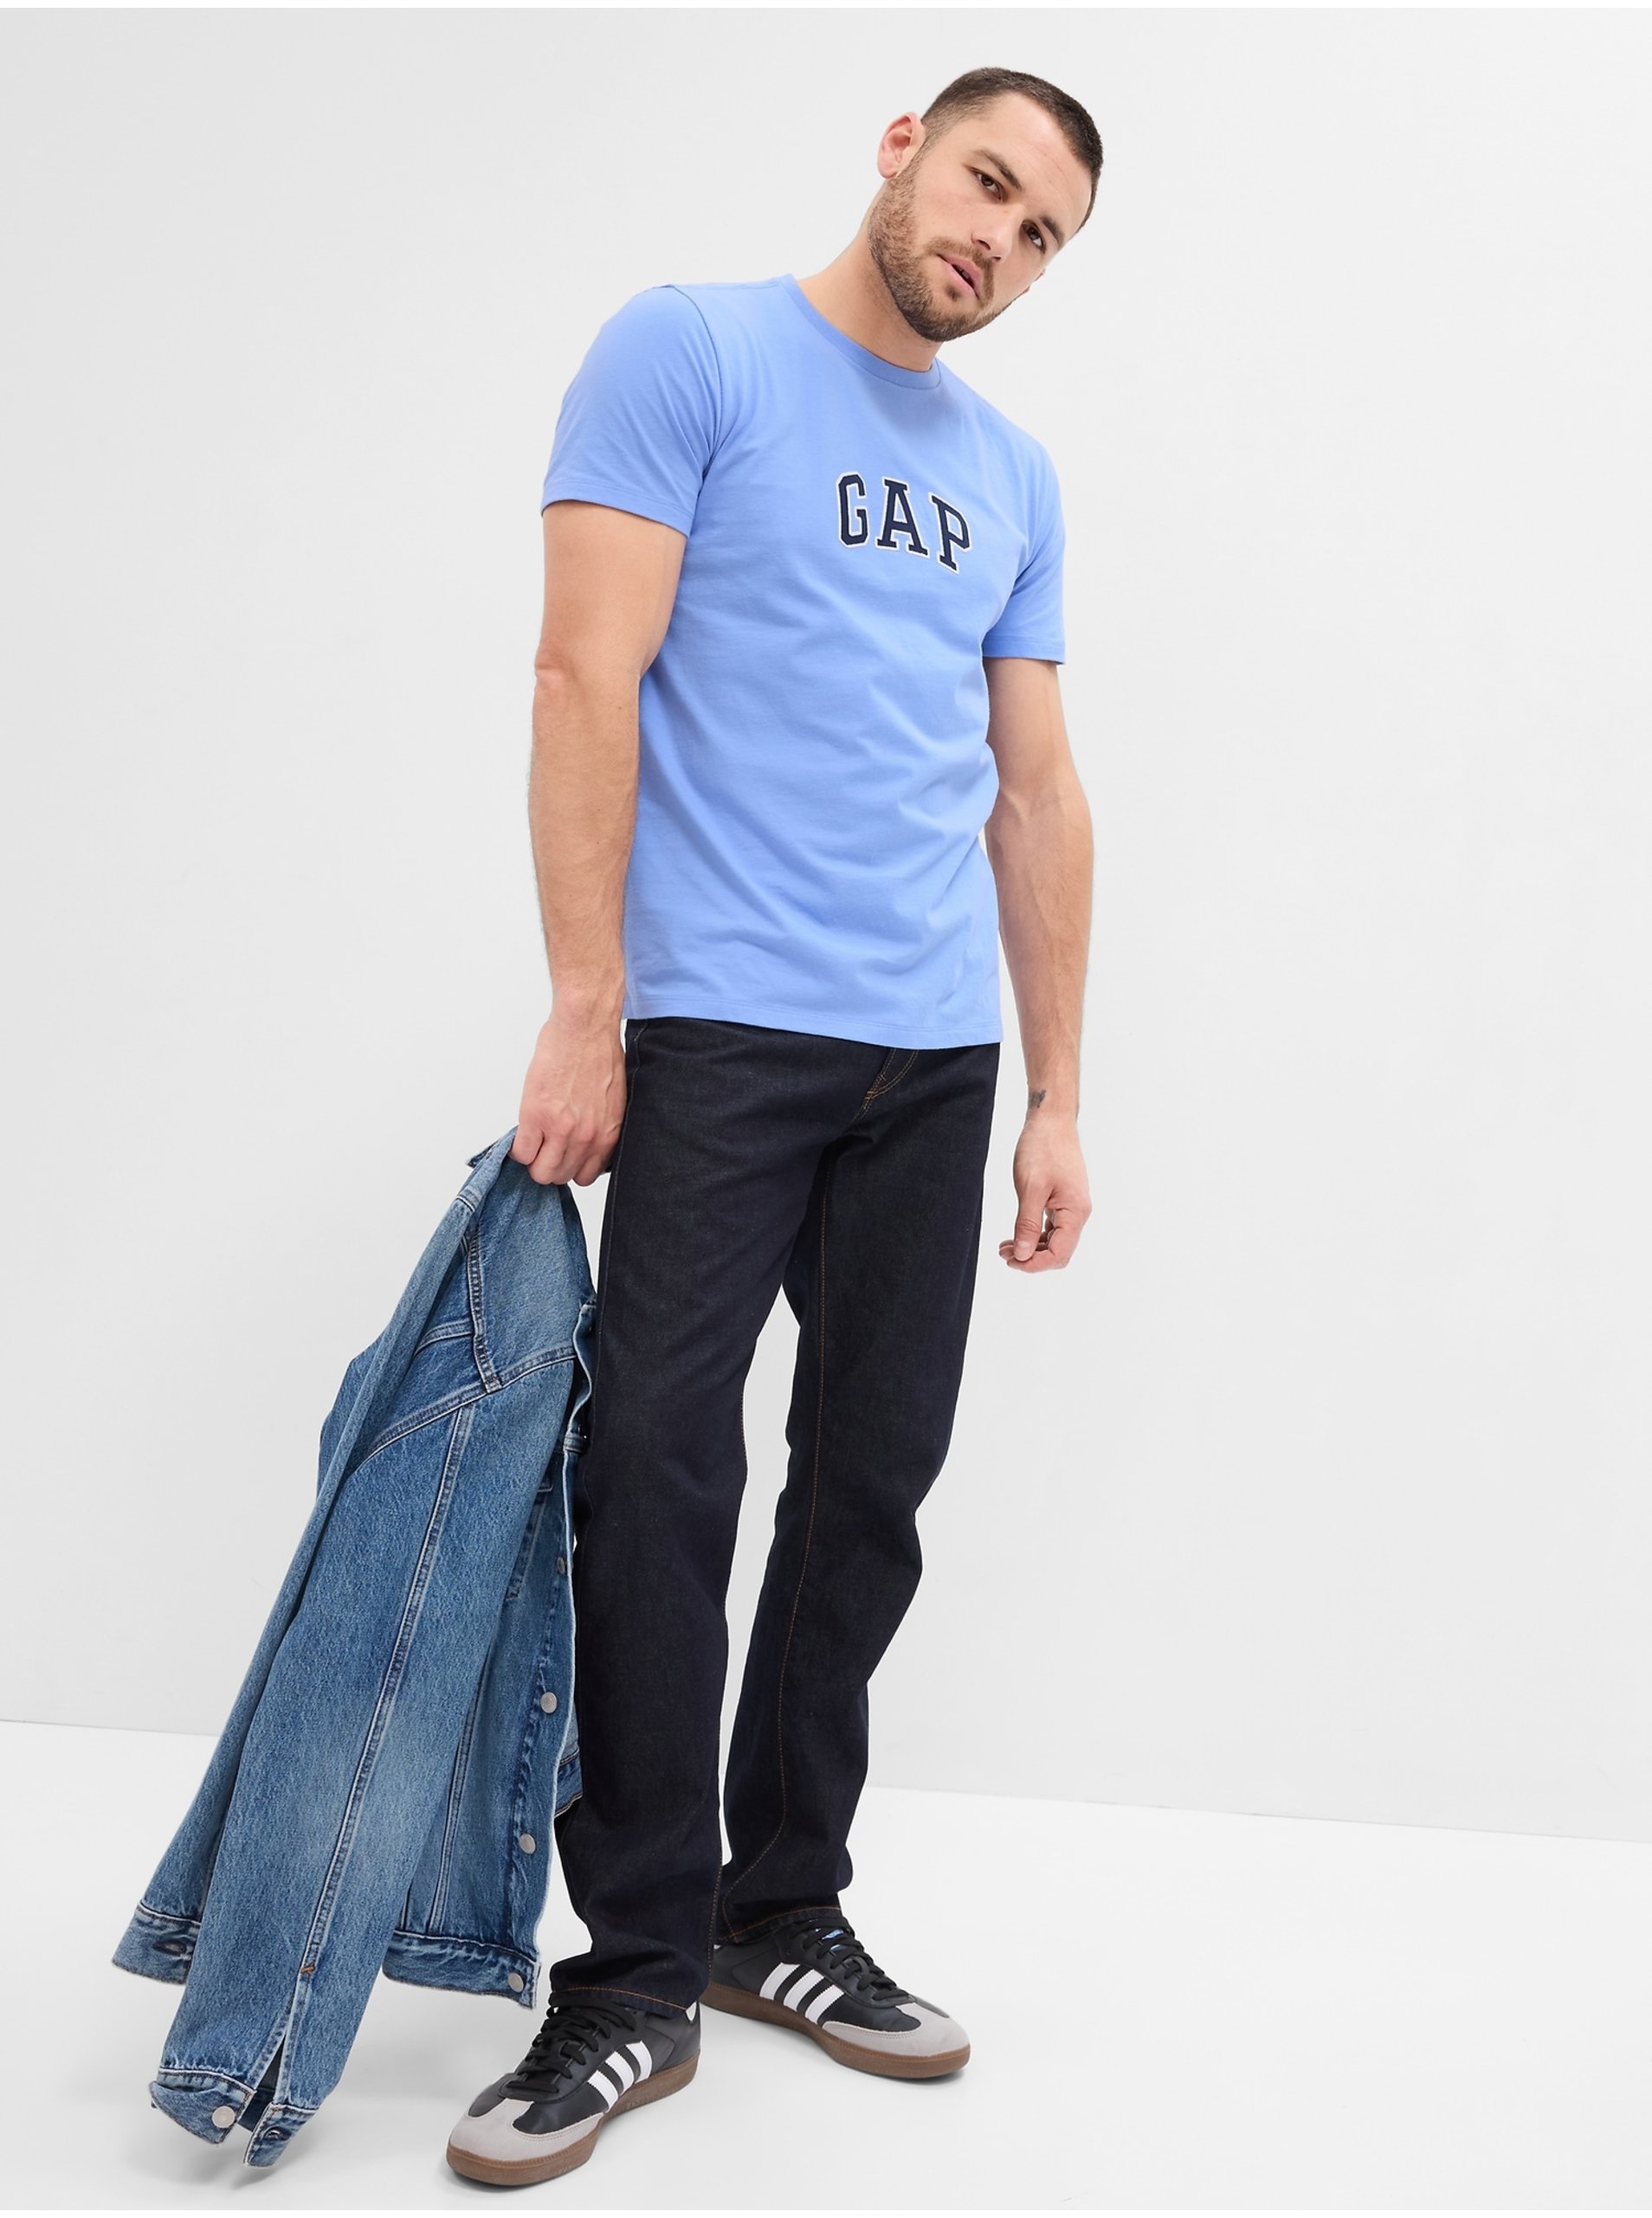 Lacno Modré pánske tričko s logom GAP